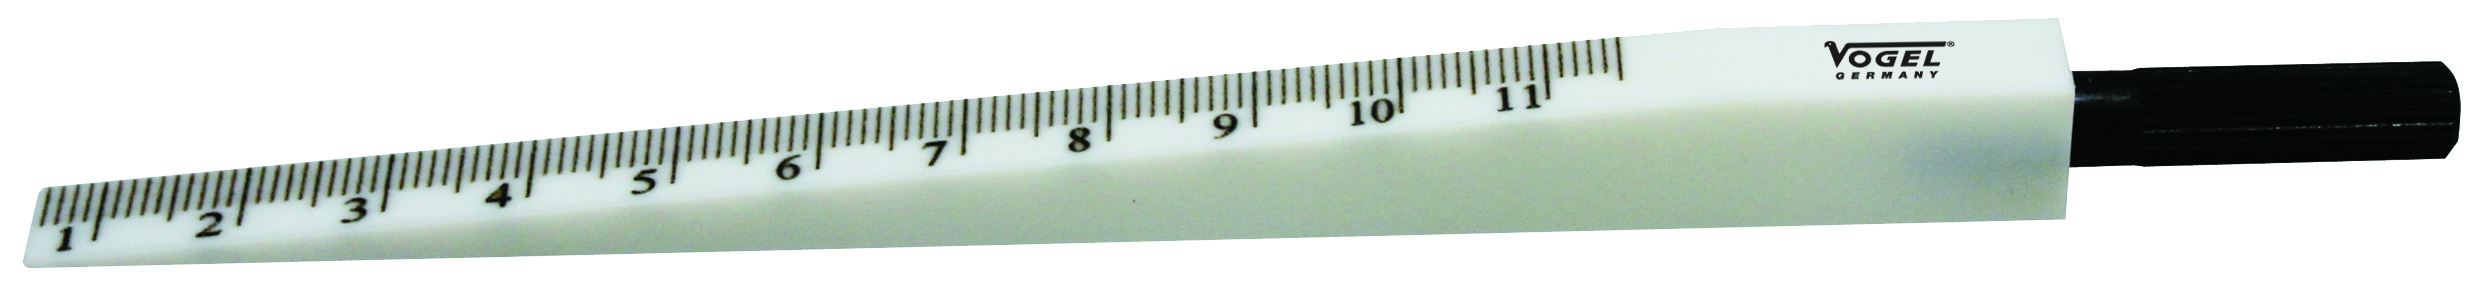 Messkeil aus ABS-Kunststoff Messbereich 0,5 - 11,0 mm